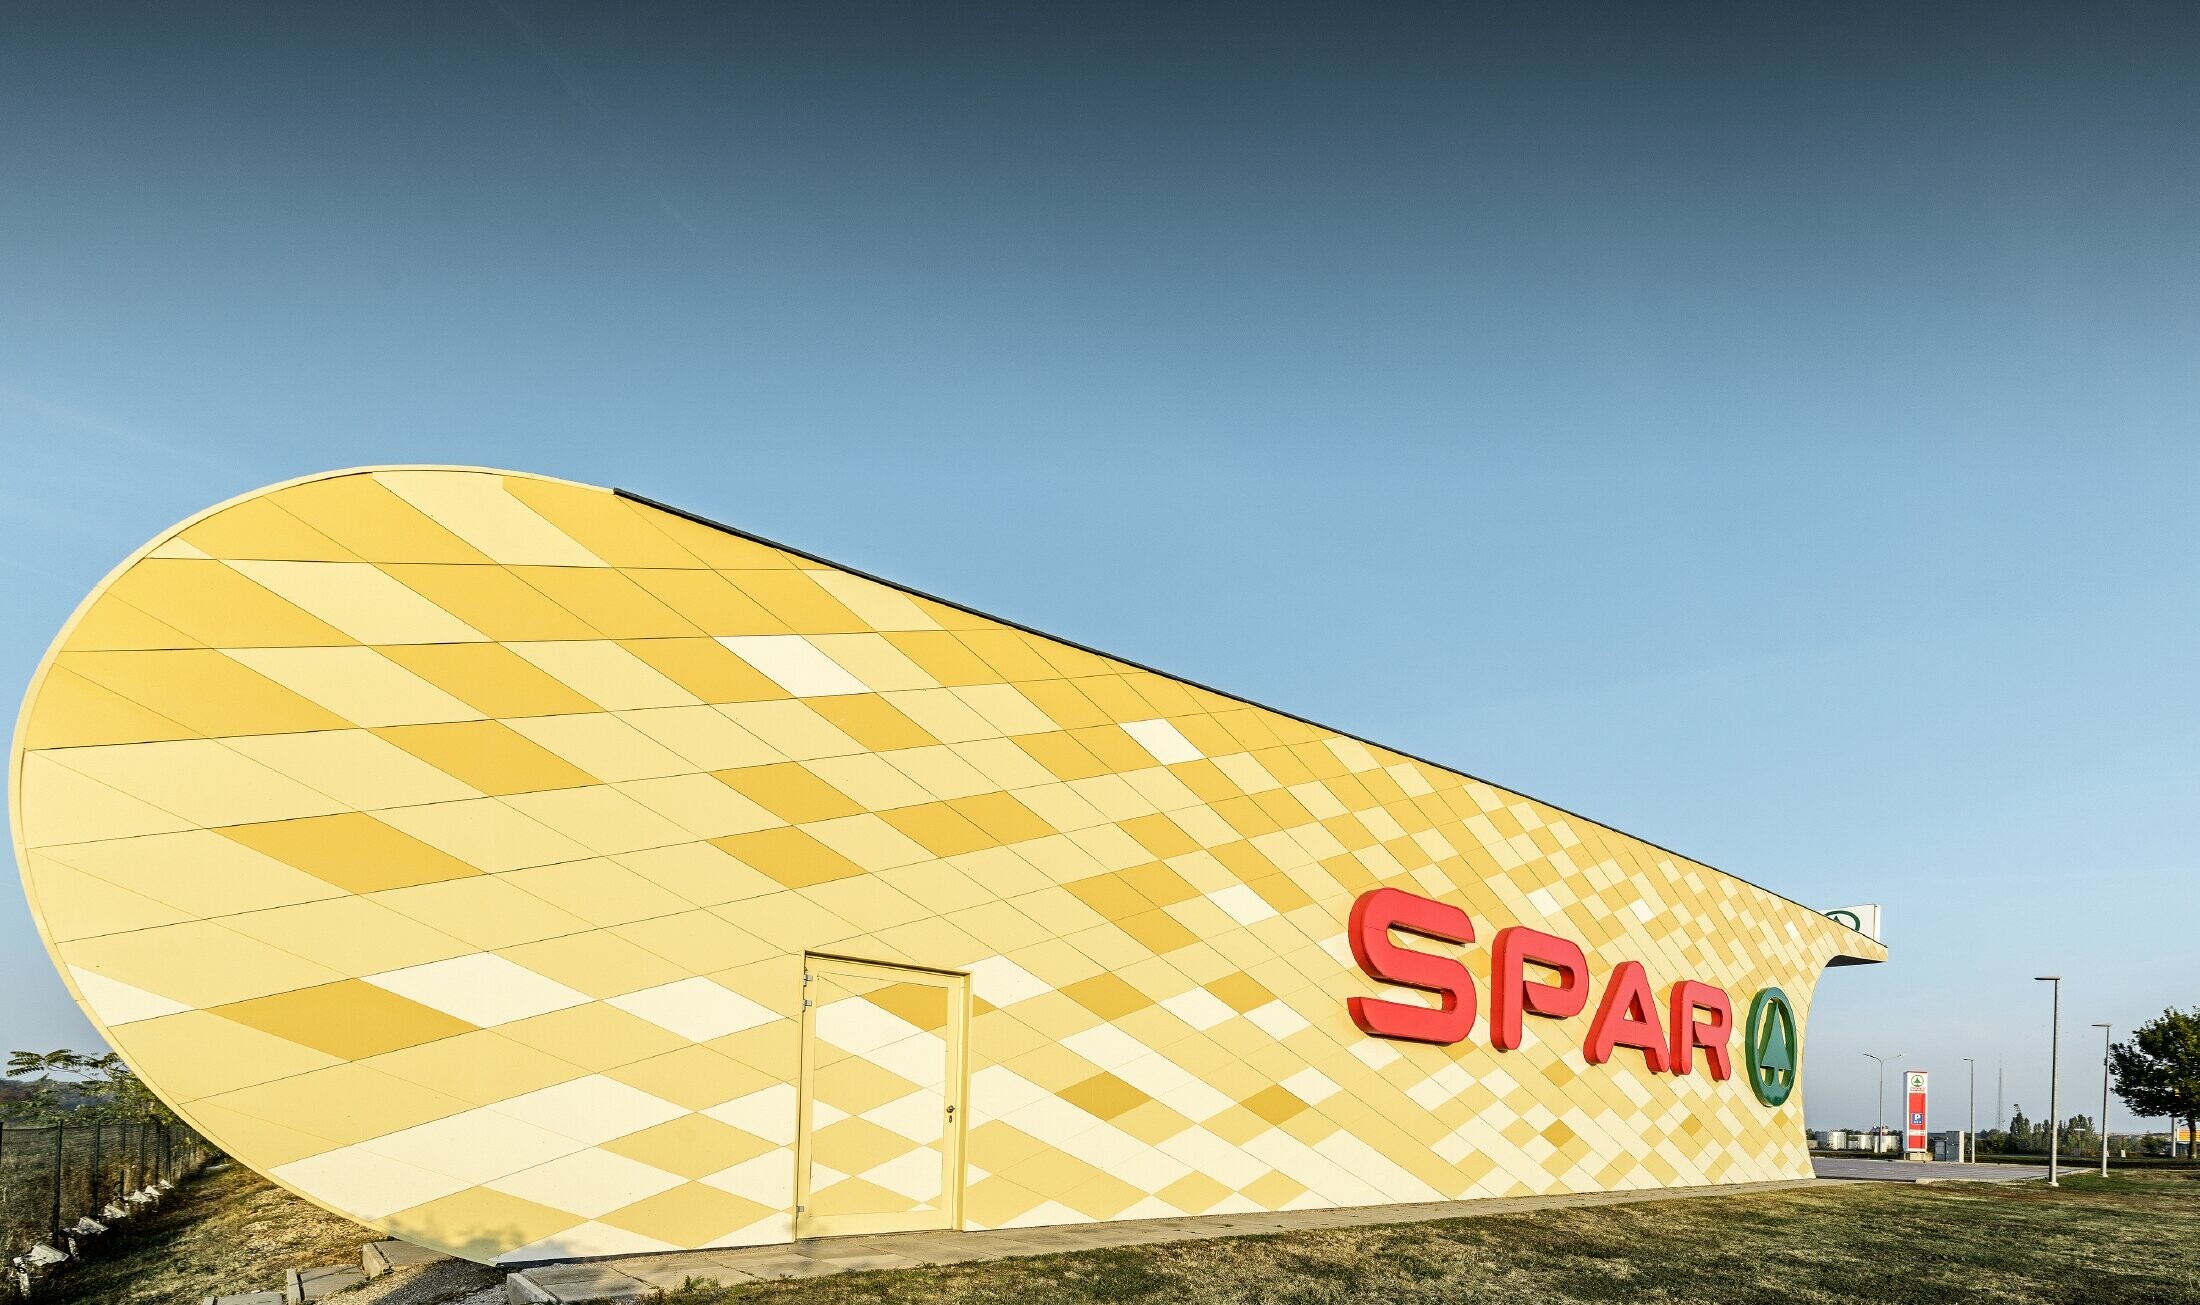 Spar podružnica s kariranom aluminijskom fasadom u žuto-narančastoj boji i Spar Logotipom